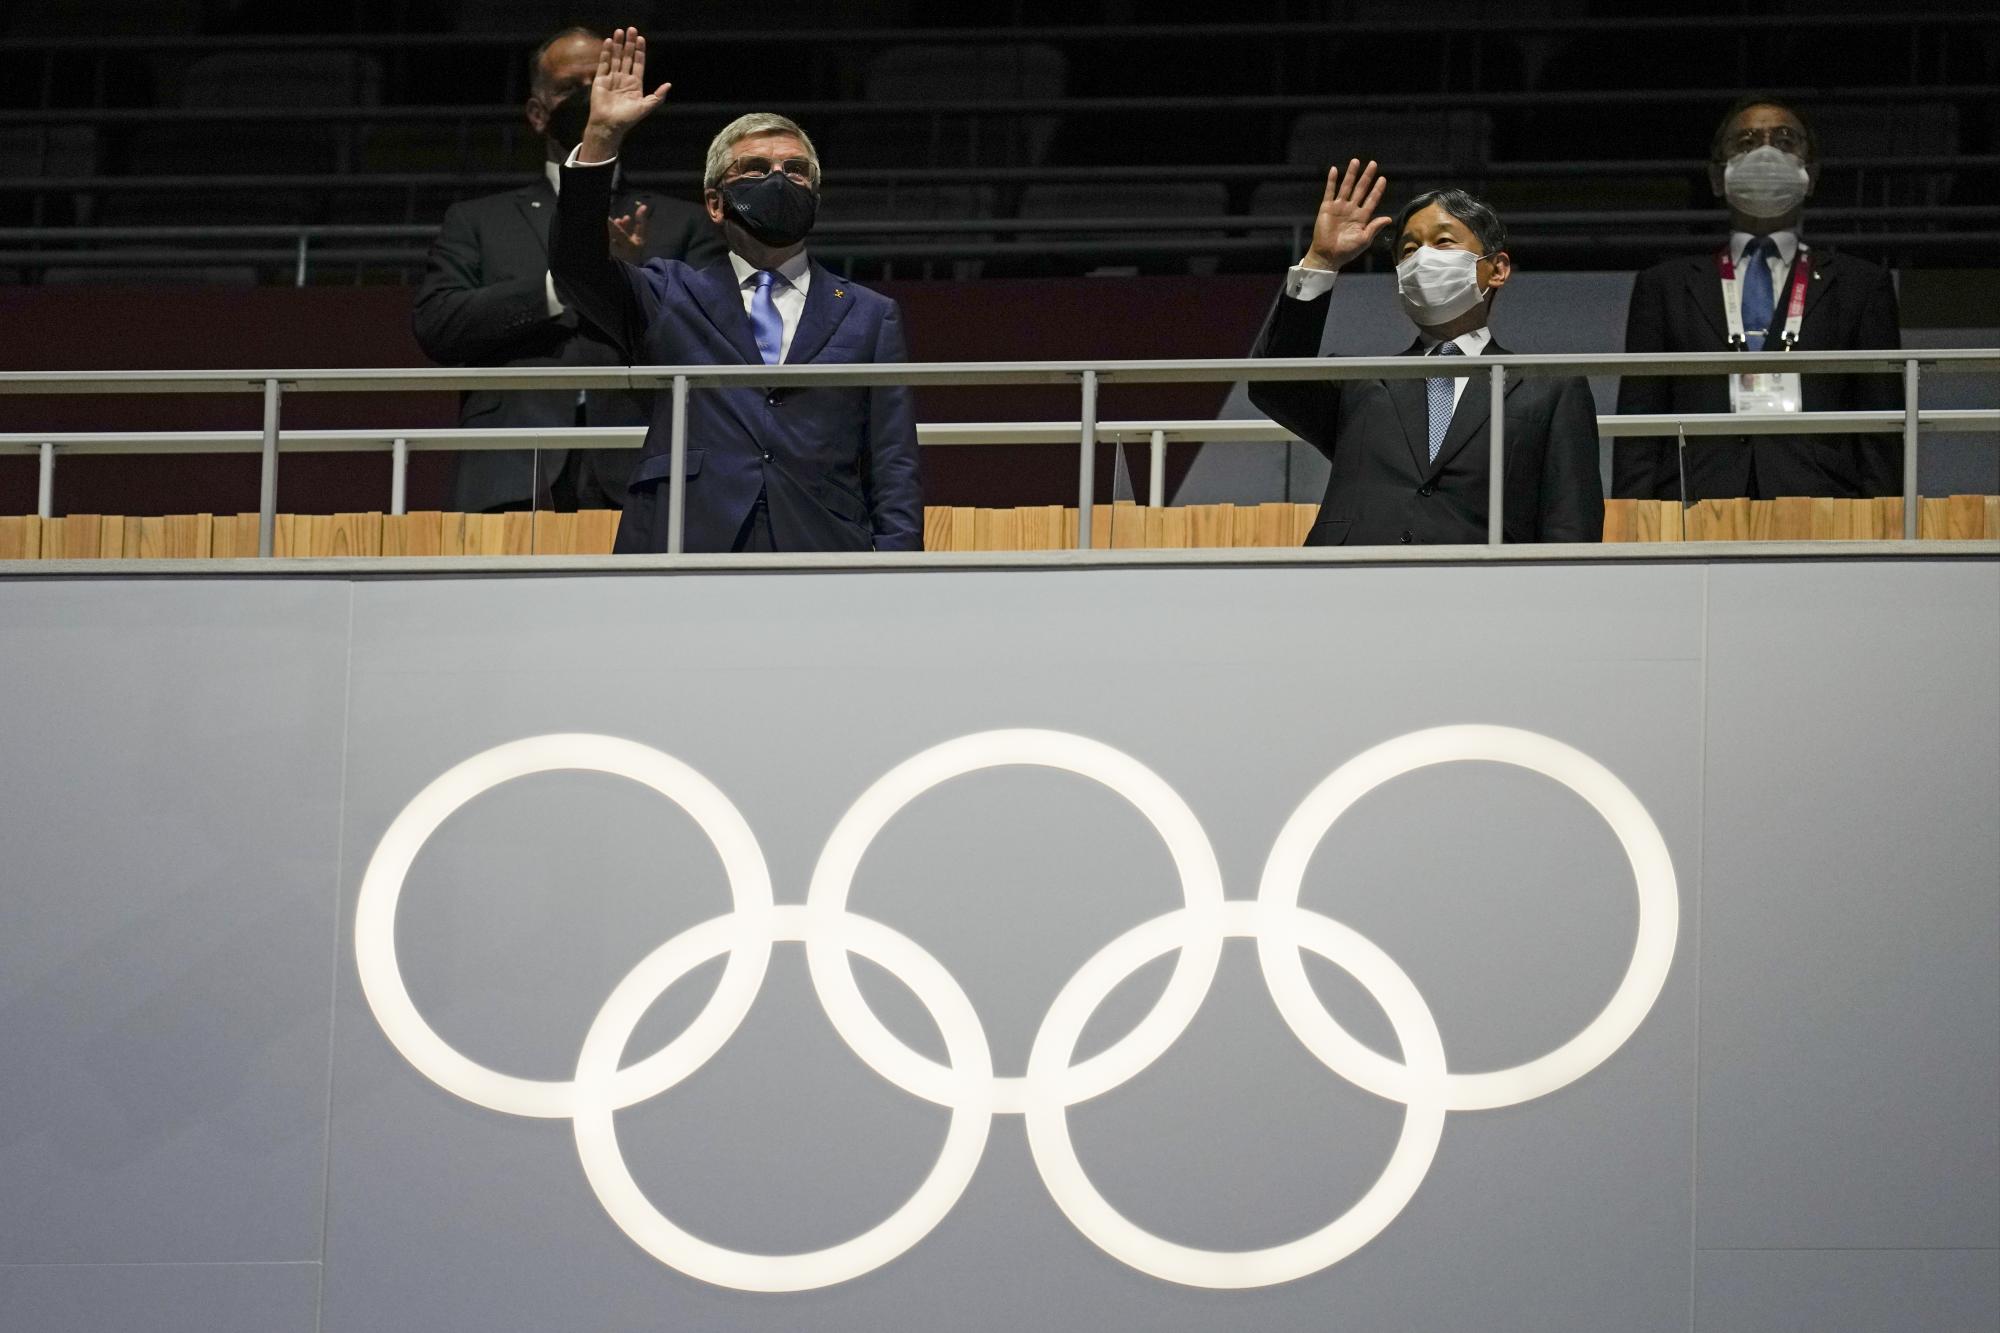 El presidente del COI, Thomas Bach, a la izquierda, saluda durante la ceremonia de apertura en el Estadio Olímpico de los Juegos Olímpicos de Verano de 2020, el viernes 23 de julio de 2021, en Tokio, Japón. (Foto AP / Natacha Pisarenko)